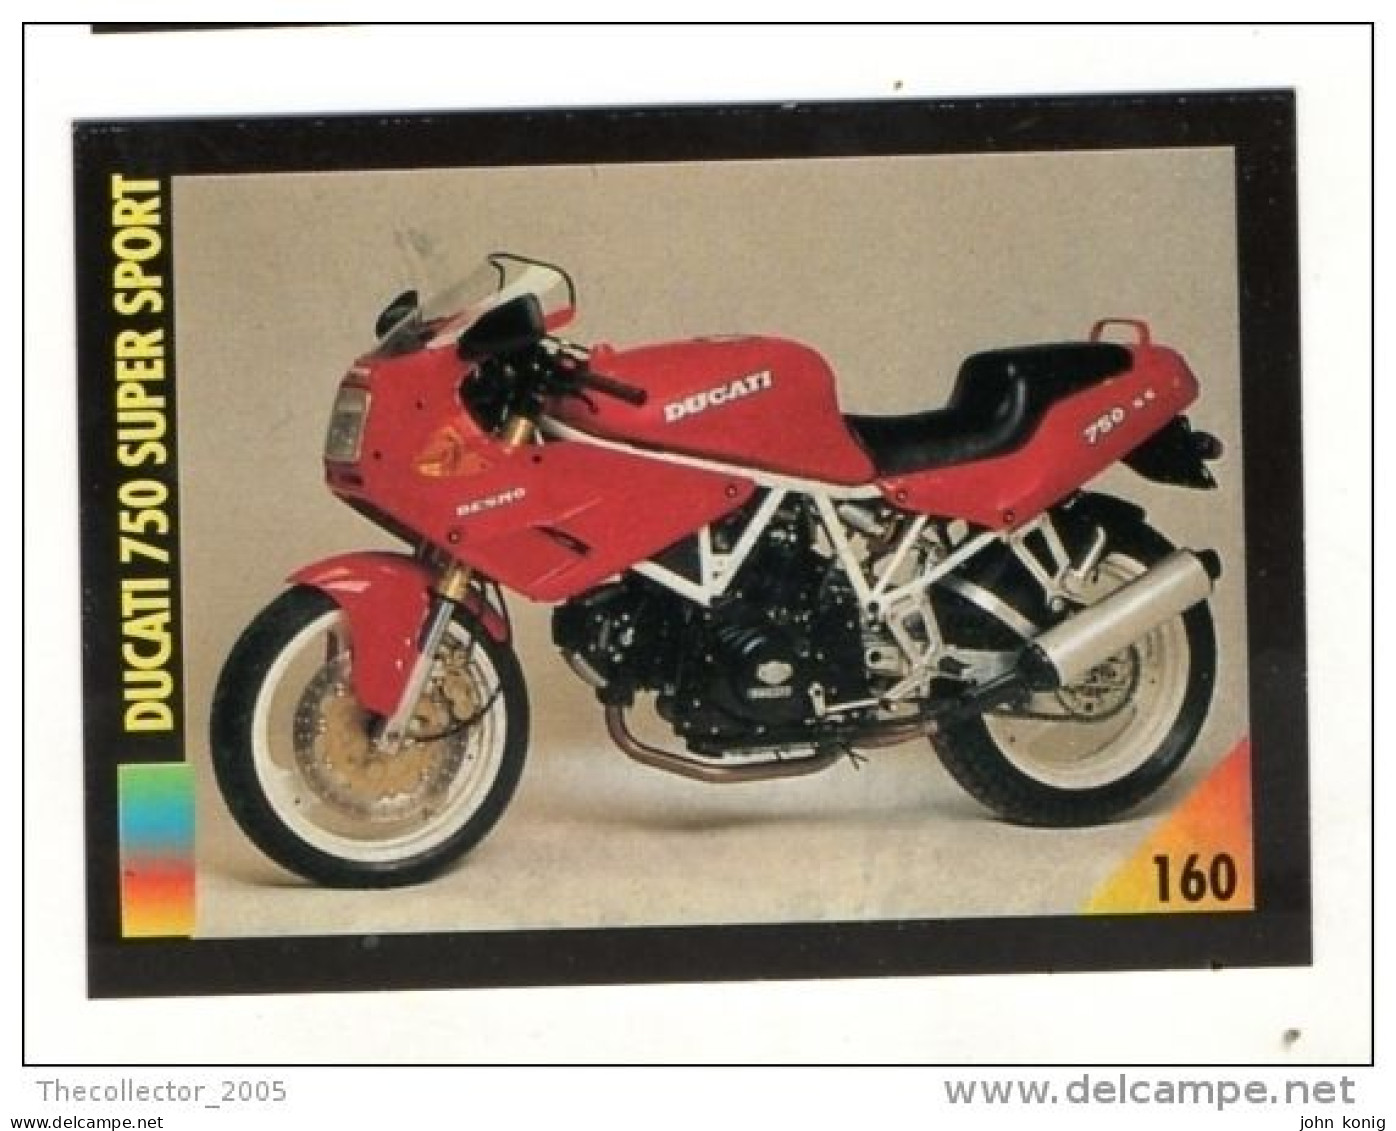 FIGURINA TRADING CARDS - LA MIA MOTO - MY MOTORBIKE - MASTERS EDIZIONI (1993) - DUCATI 750 SUPER SPORT - Auto & Verkehr